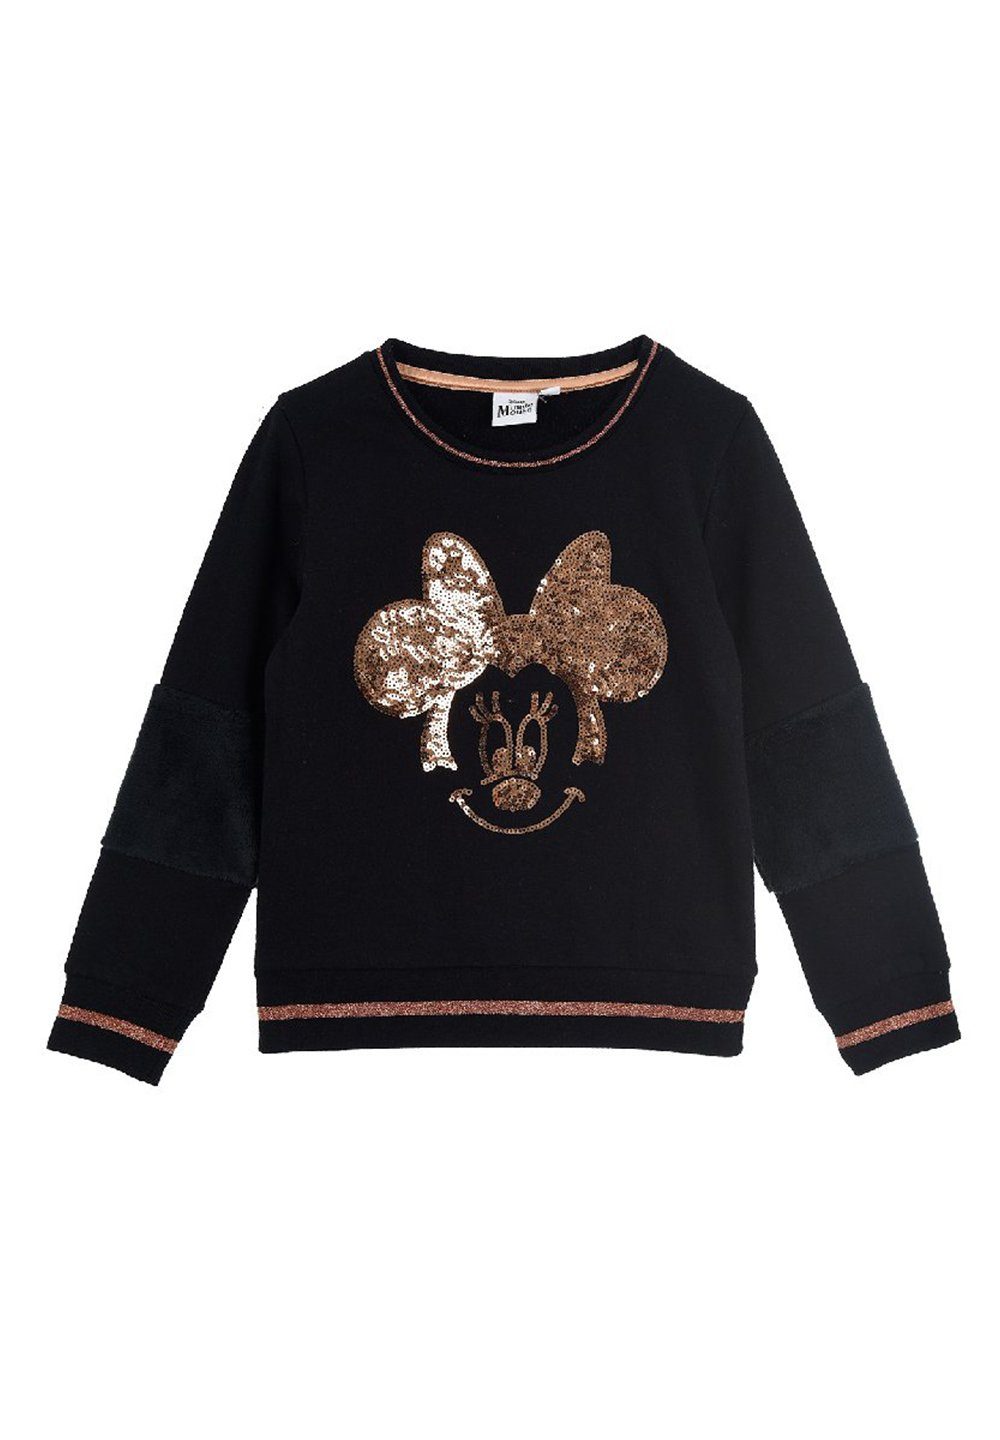 Disney Minnie Mouse Sweatshirt Kinder Mädchen Pulli Sweater Pullover Motiv aus Pailletten Schwarz